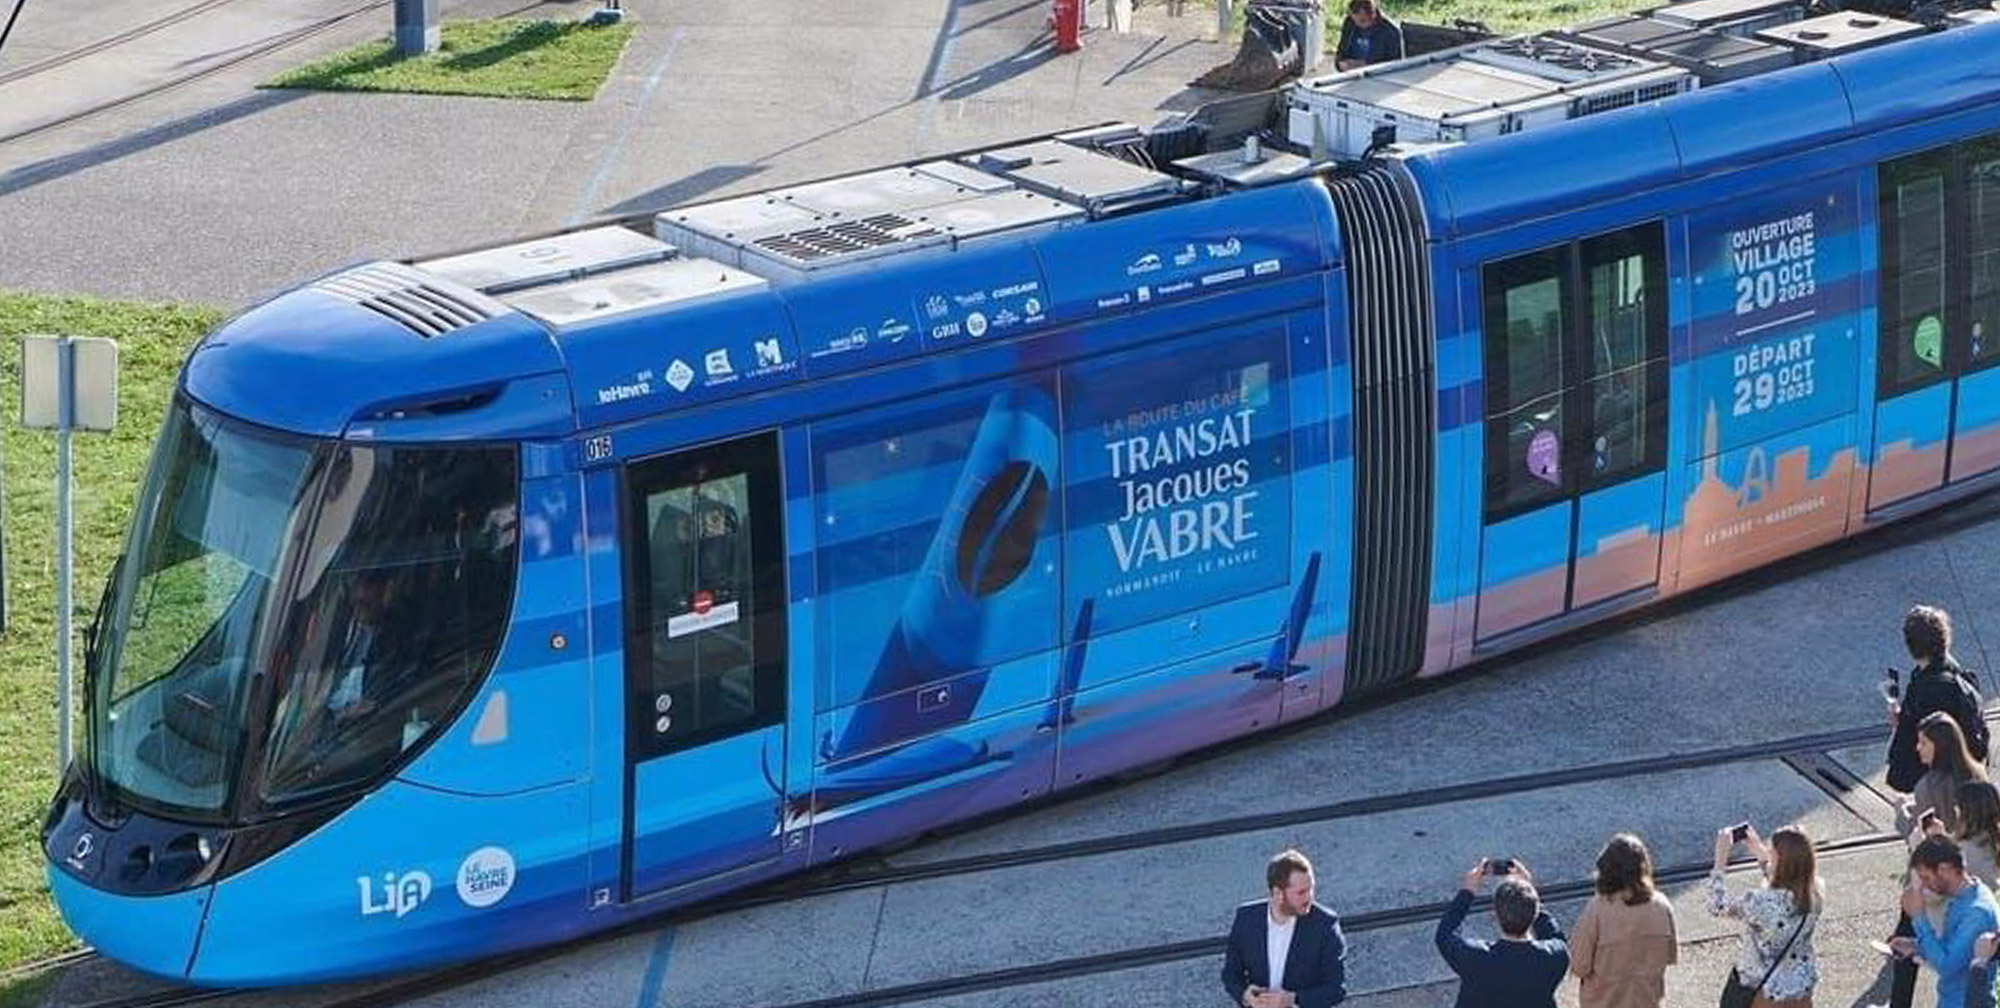 Covering du tram de la ville du Havre de la Transat Jacques Vabre 2023, une prestigieuse course transatlantique en duo de voile partant du Havre pour rejoindre la Martinique.